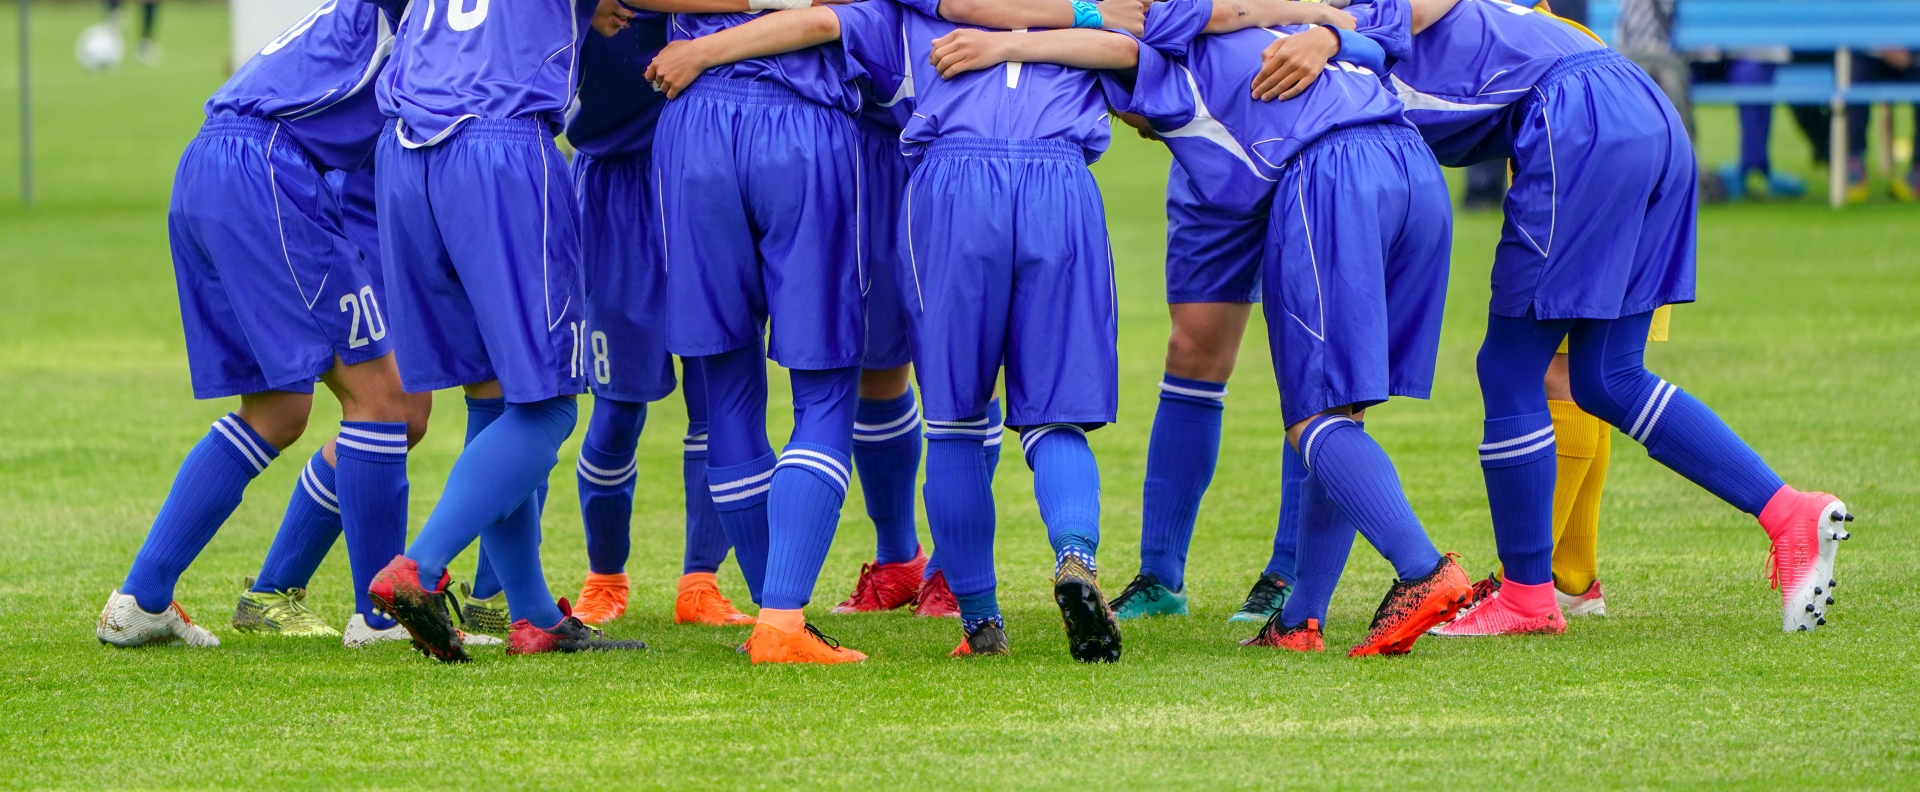 育成年代のサッカー指導者が練習や試合で意識すべきコーチングポイント6選